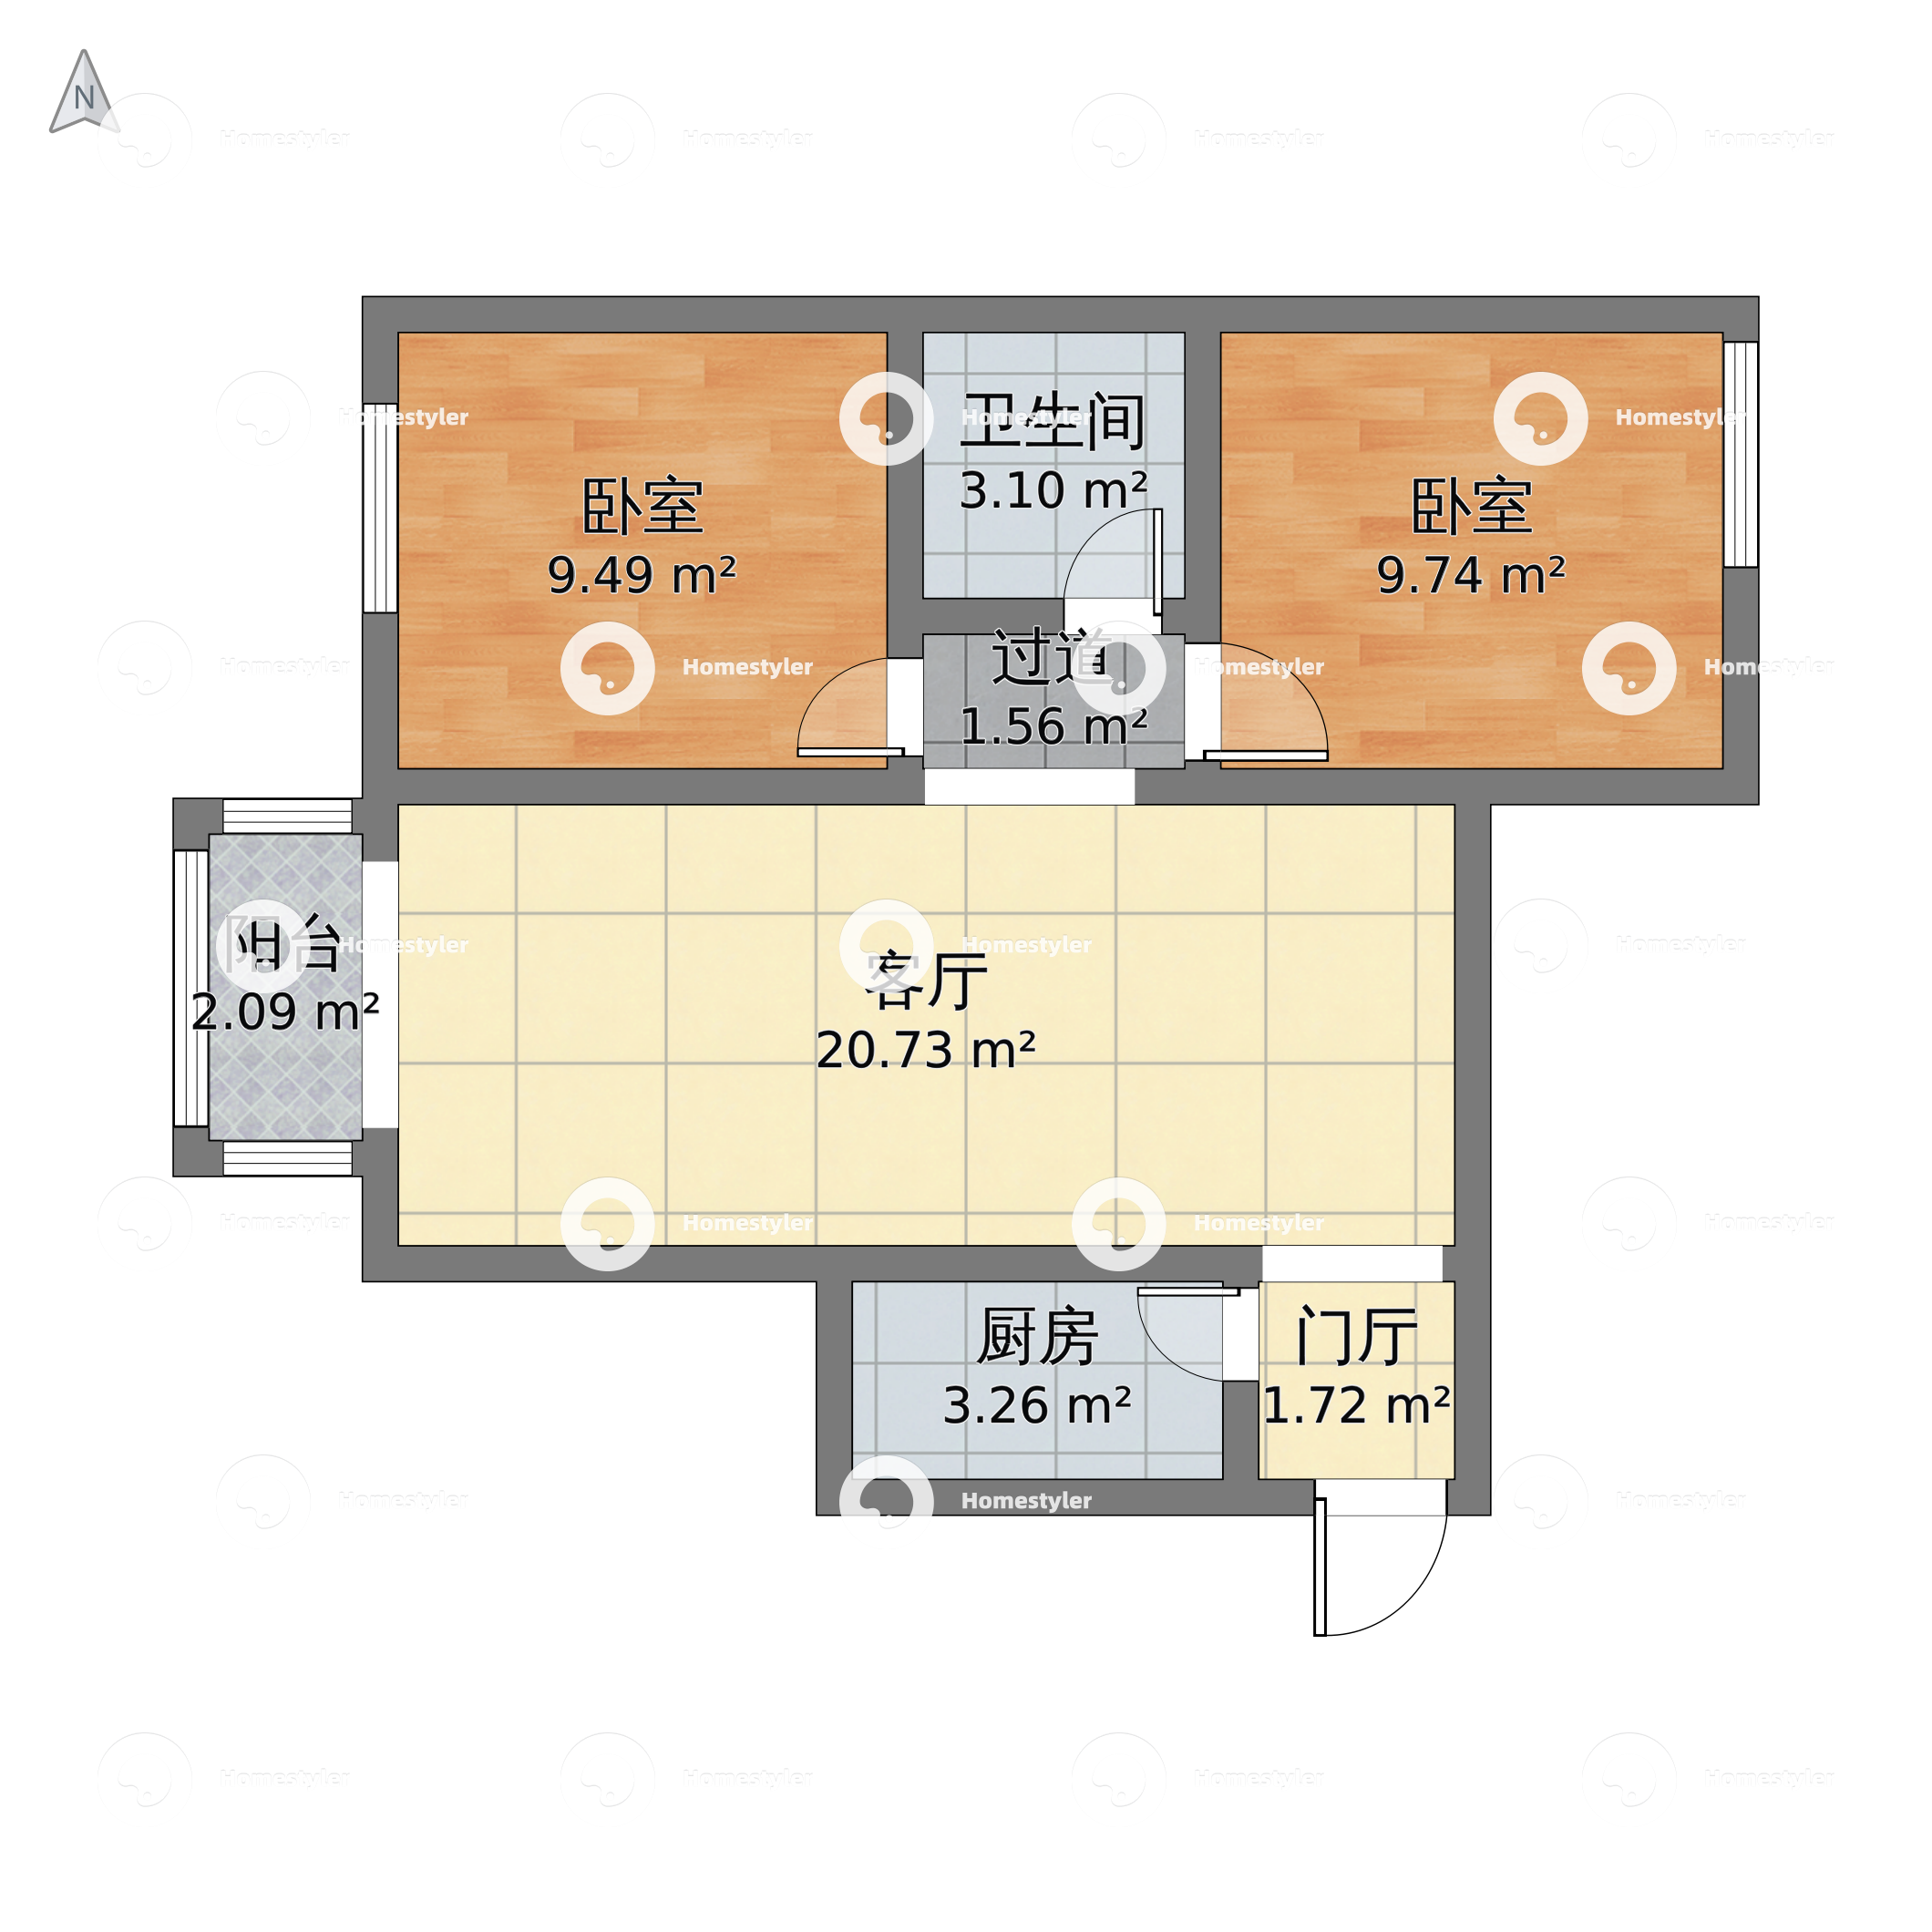 北京市东城区 新景家园2室1厅1卫 75m² - 中式风格两室一厅装修效果图 - 乐乐设计效果图 - 躺平设计家